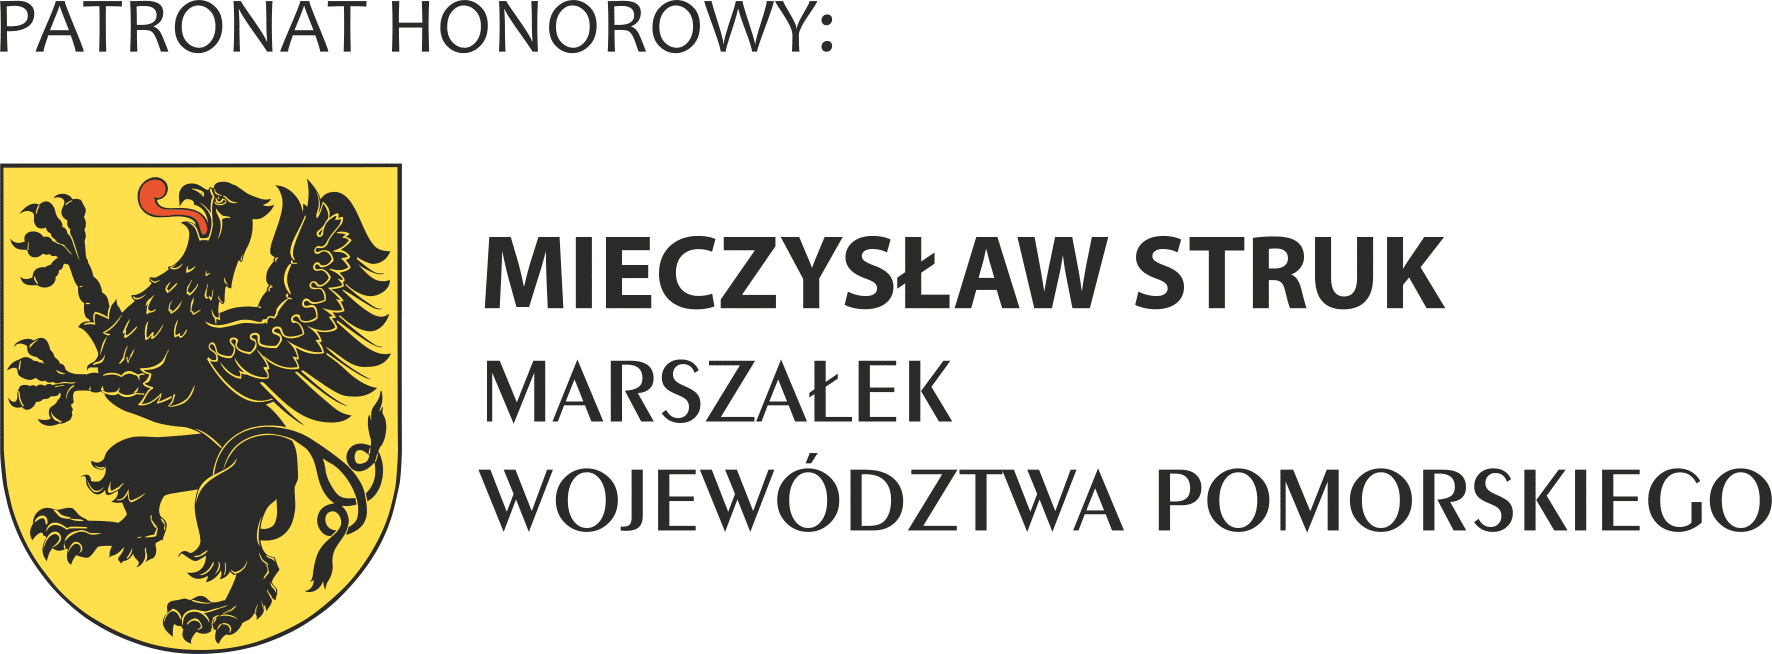 Patronat honorowy: Mieczysław Struk, Marszałek Województwa Pomorskiego